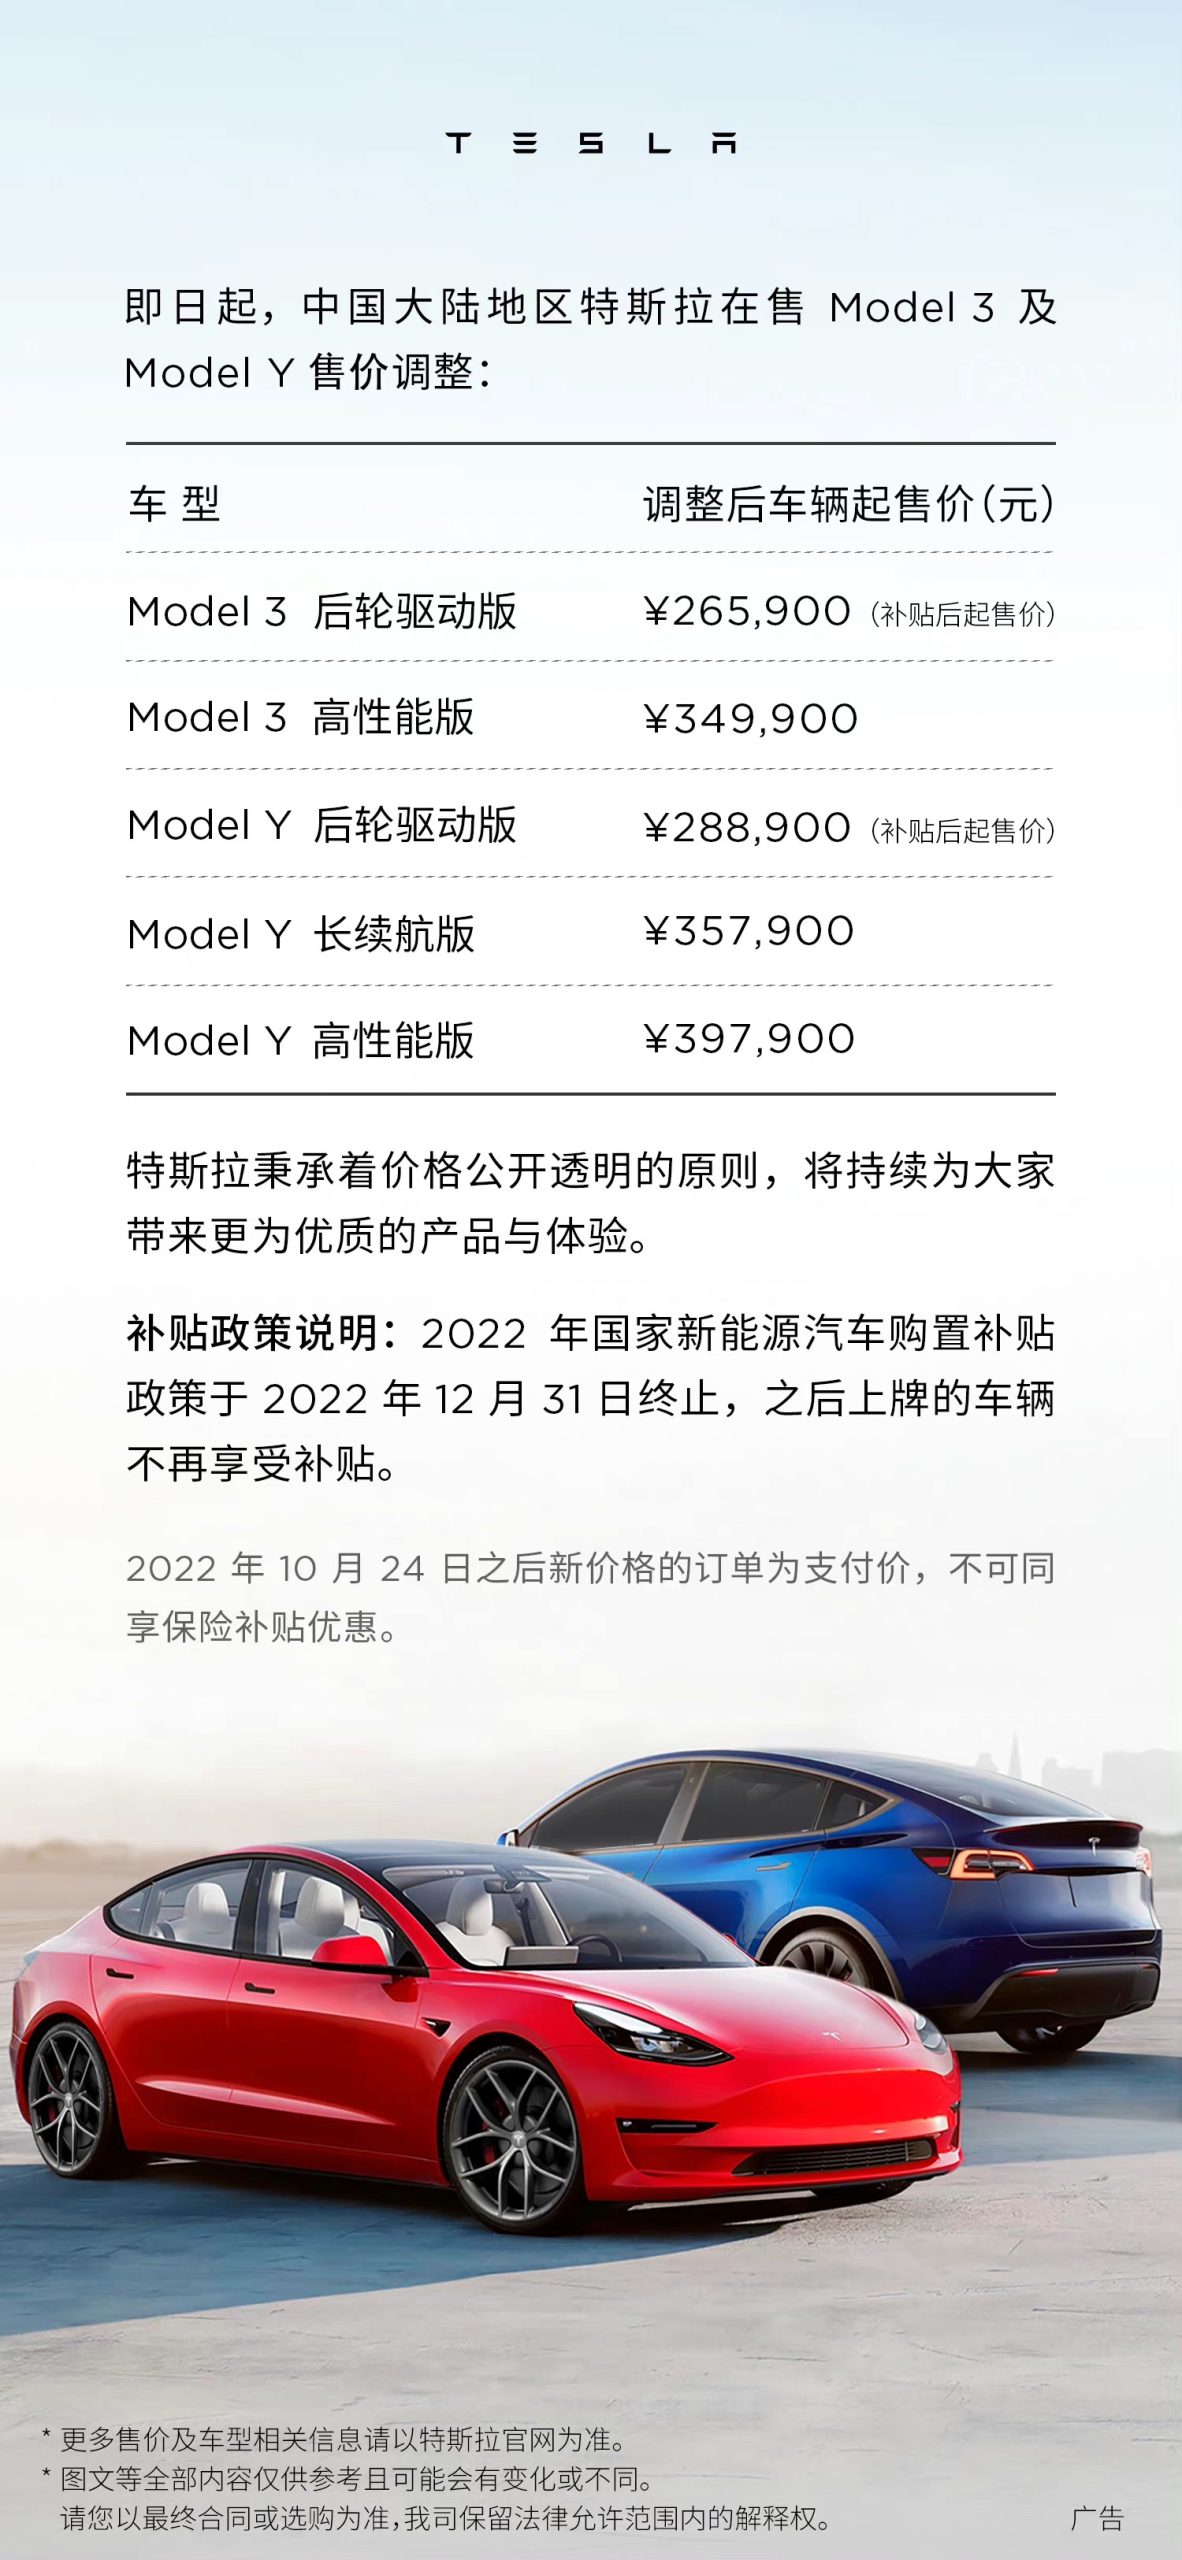 Tesla-china-price-cut